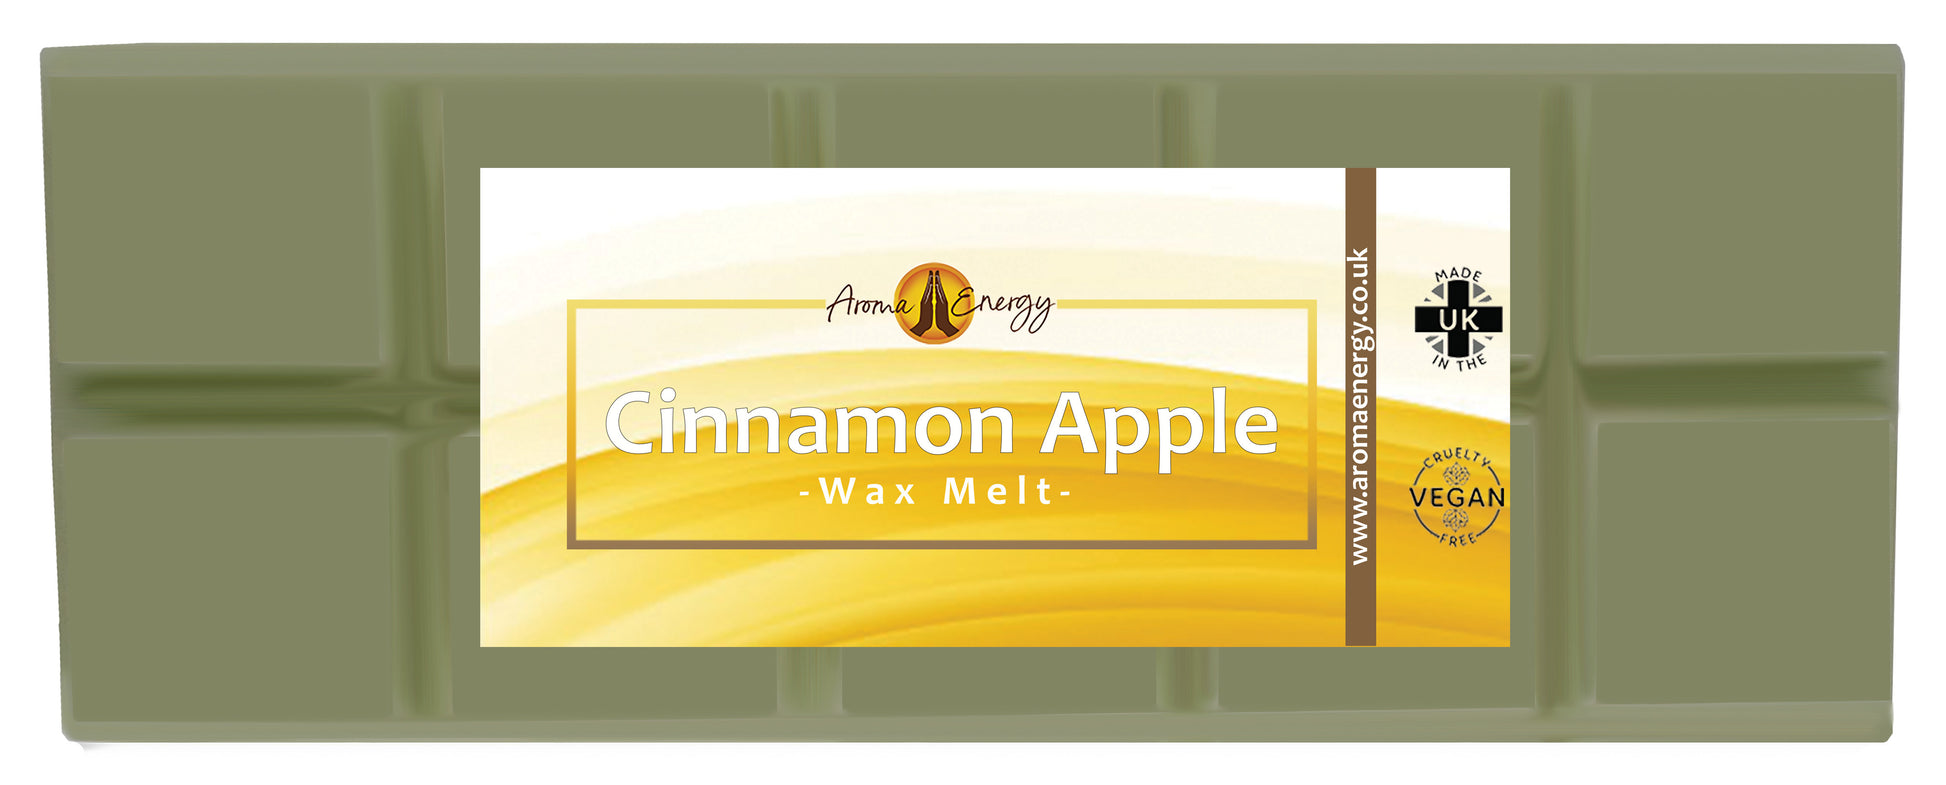 Cinnamon Apple Wax Melt | Christmas Wax Melt | Big Snap Bar | 50g - Aroma Energy